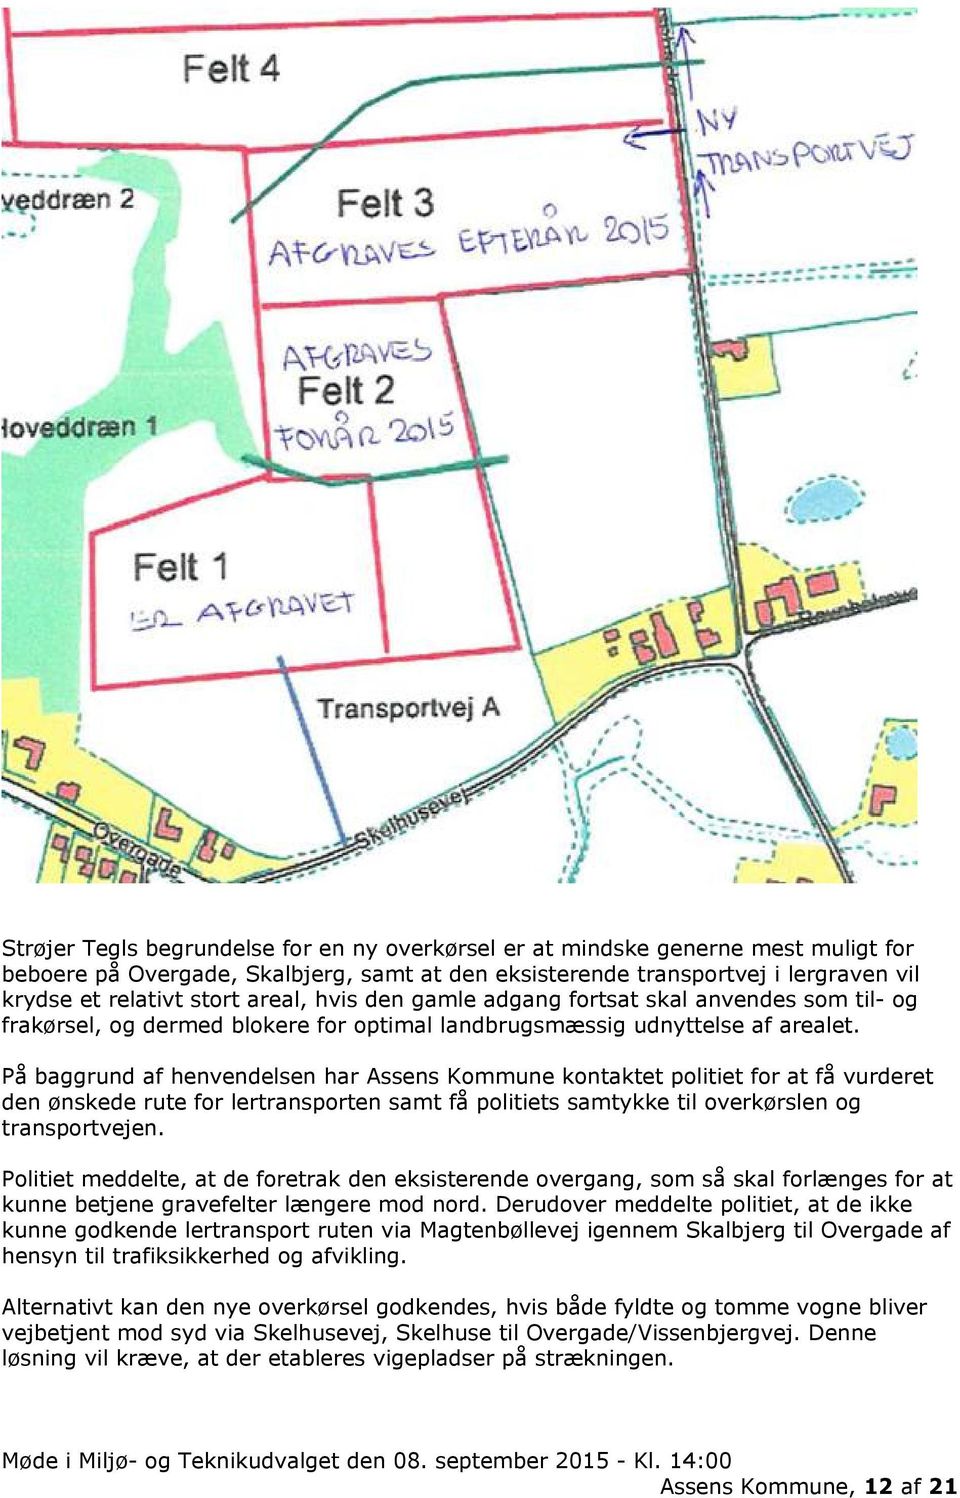 På baggrund af henvendelsen har Assens Kommune kontaktet politiet for at få vurderet den ønskede rute for lertransporten samt få politiets samtykke til overkørslen og transportvejen.